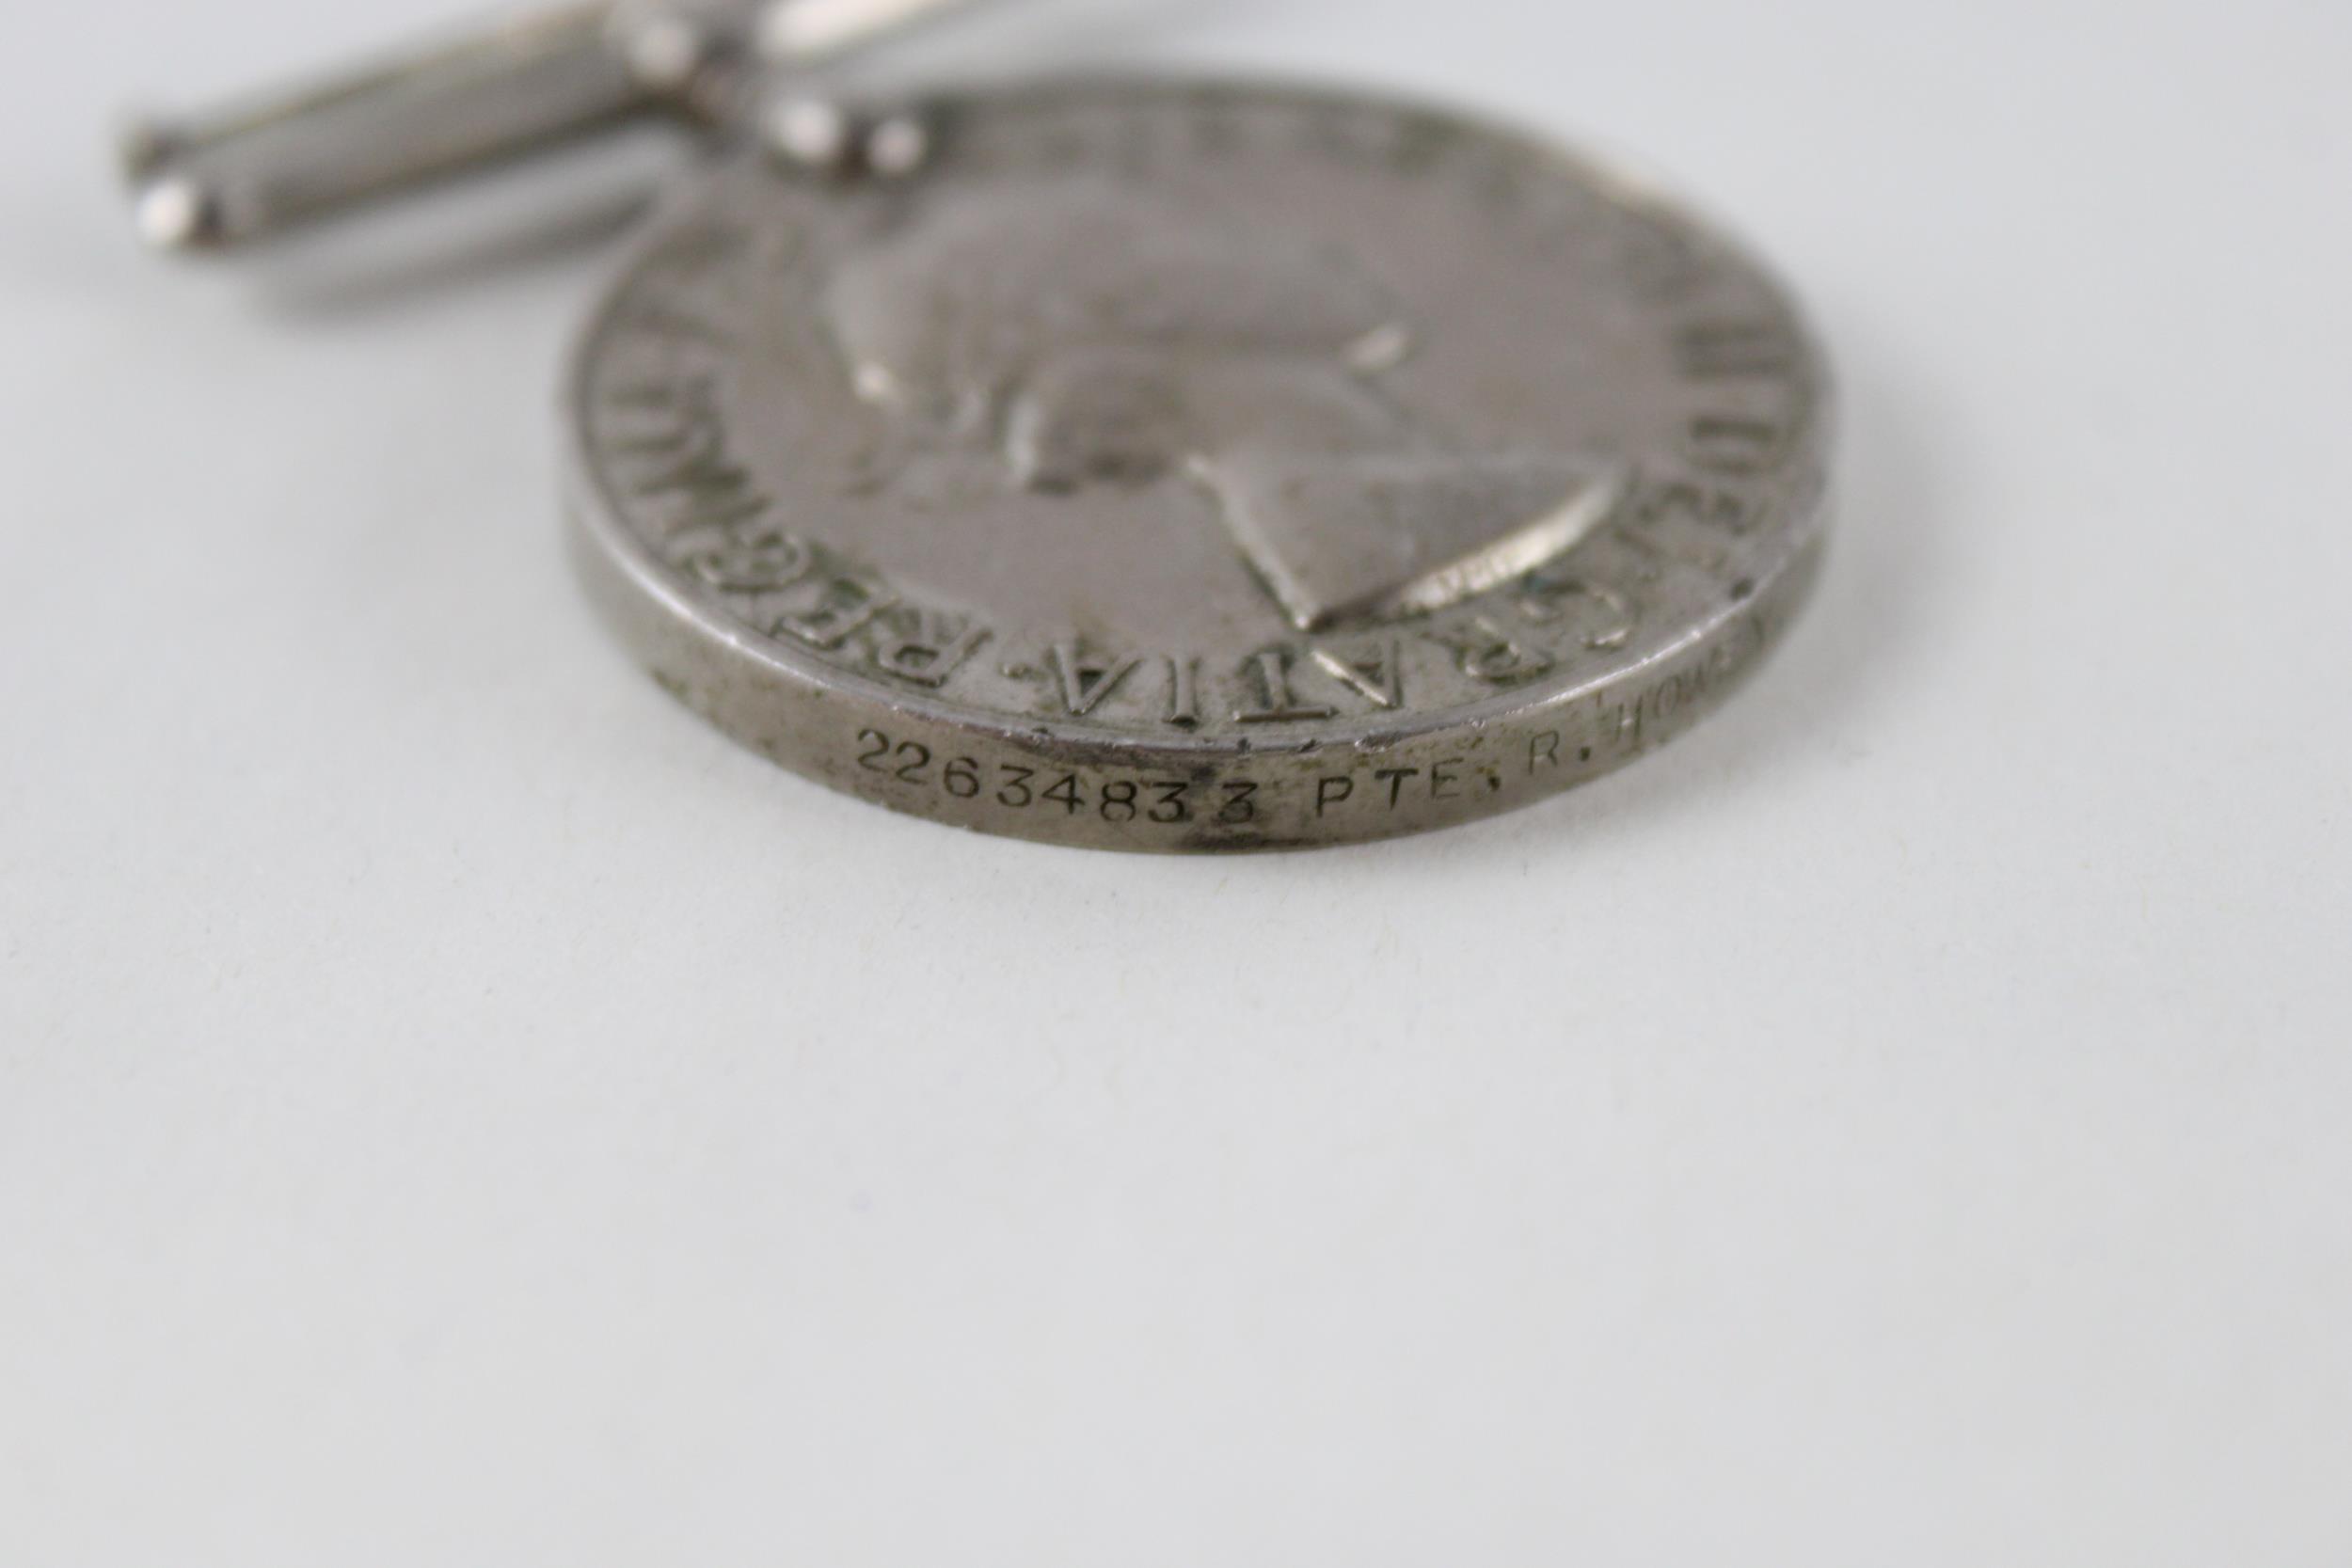 ER.II Queens Korea Medal. Named. 22634833 Pte. R. Howey D.L.I // ER.II Queens Korea Medal. Named. - Image 4 of 5